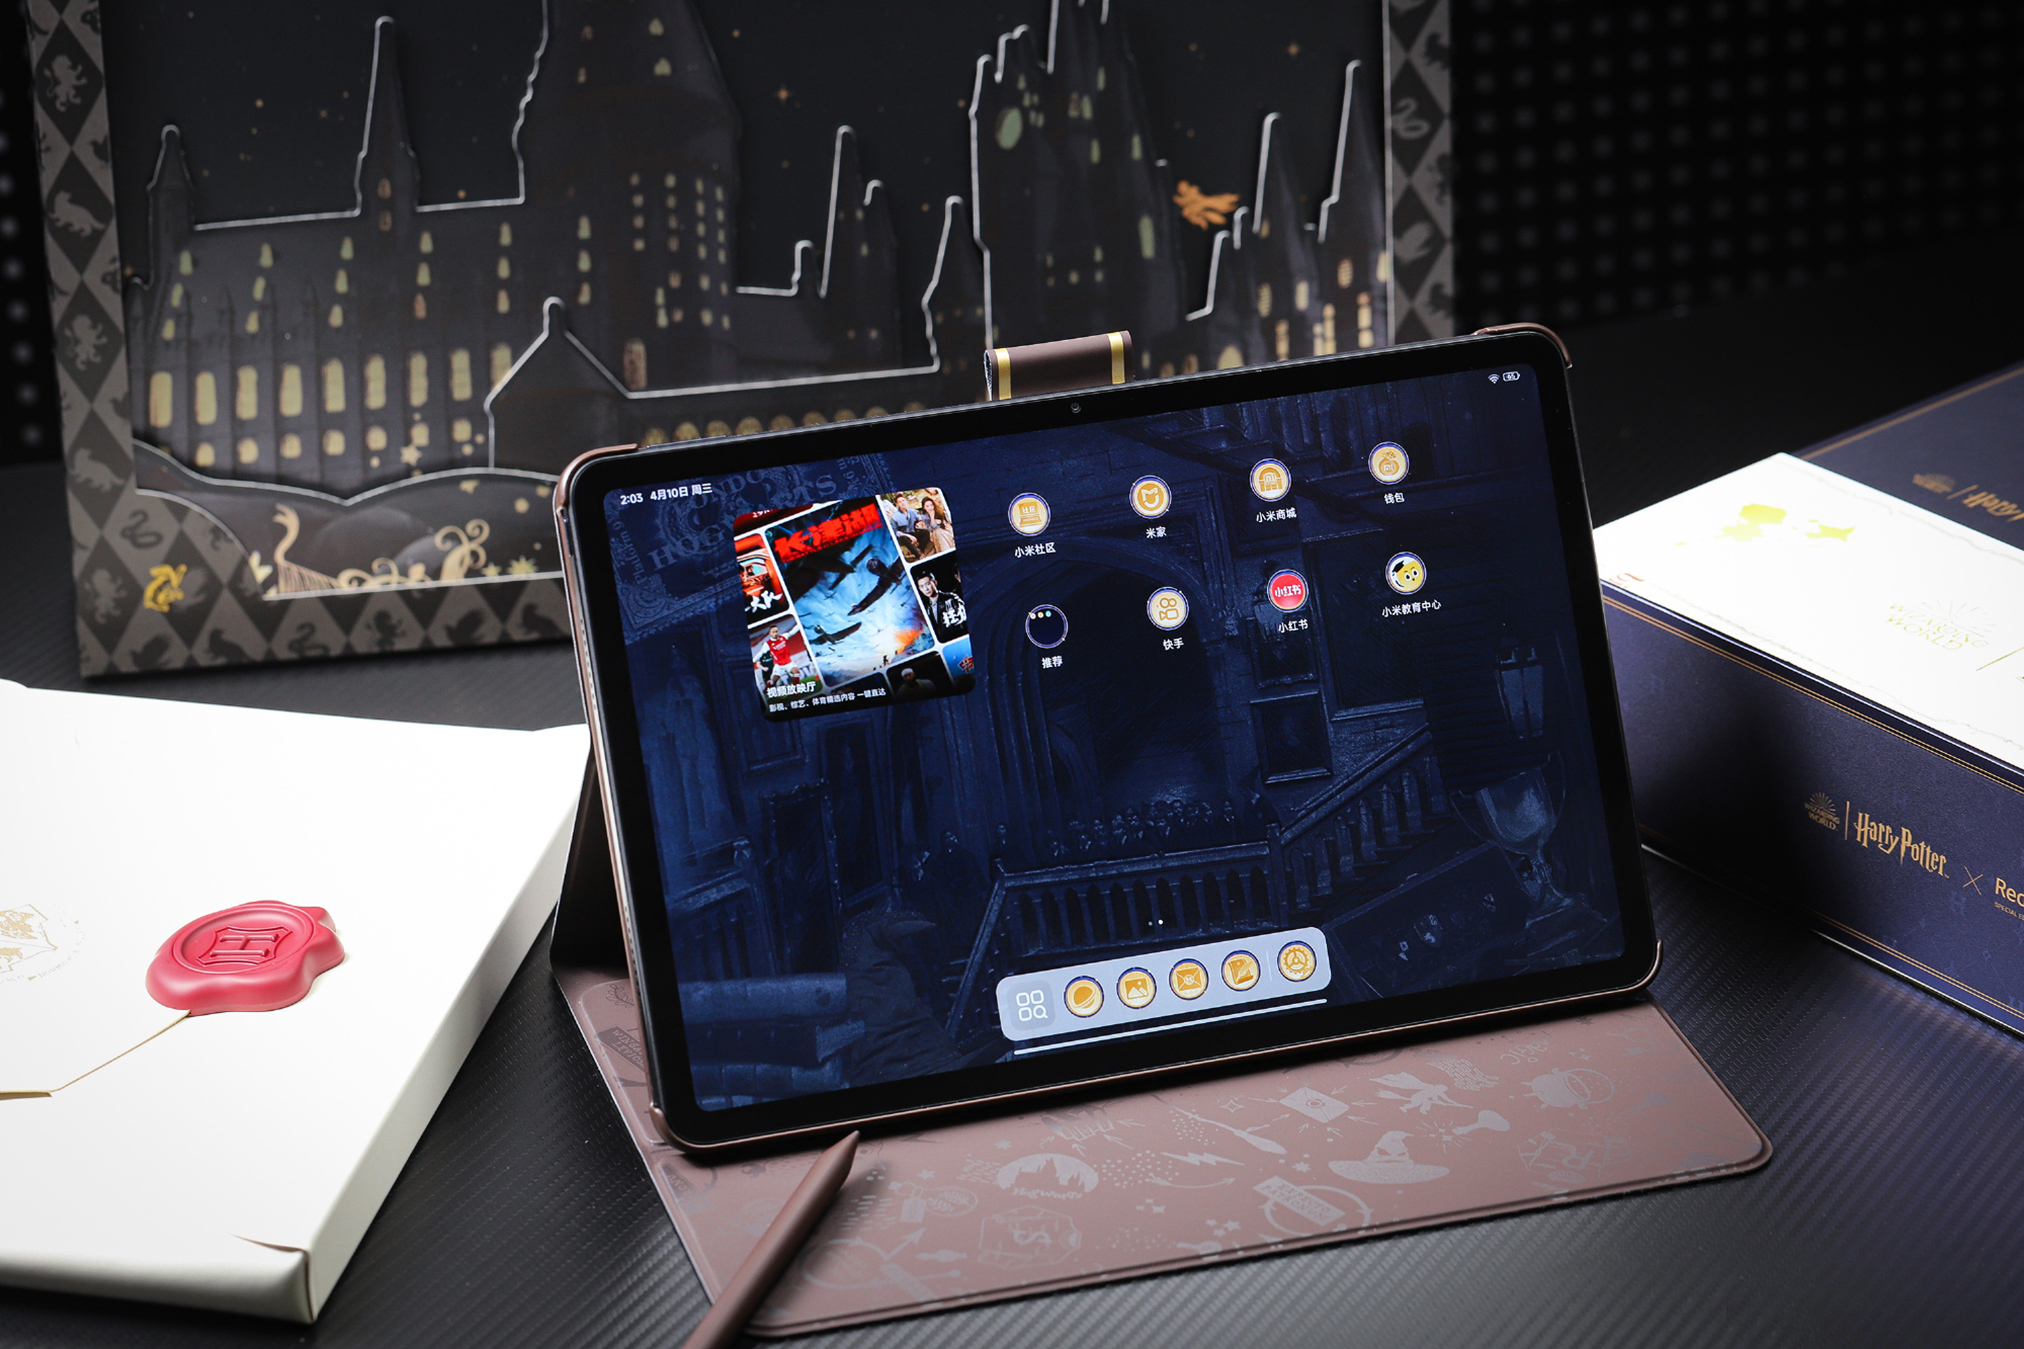 Cận cảnh máy tính bảng 12 inch giá rẻ chỉ 5 triệu đồng của Xiaomi: Thiết kế đẹp như iPad, có cả bản Harry Potter đặc biệt cho các Potterheads, pin khủng 10.000mAh- Ảnh 25.